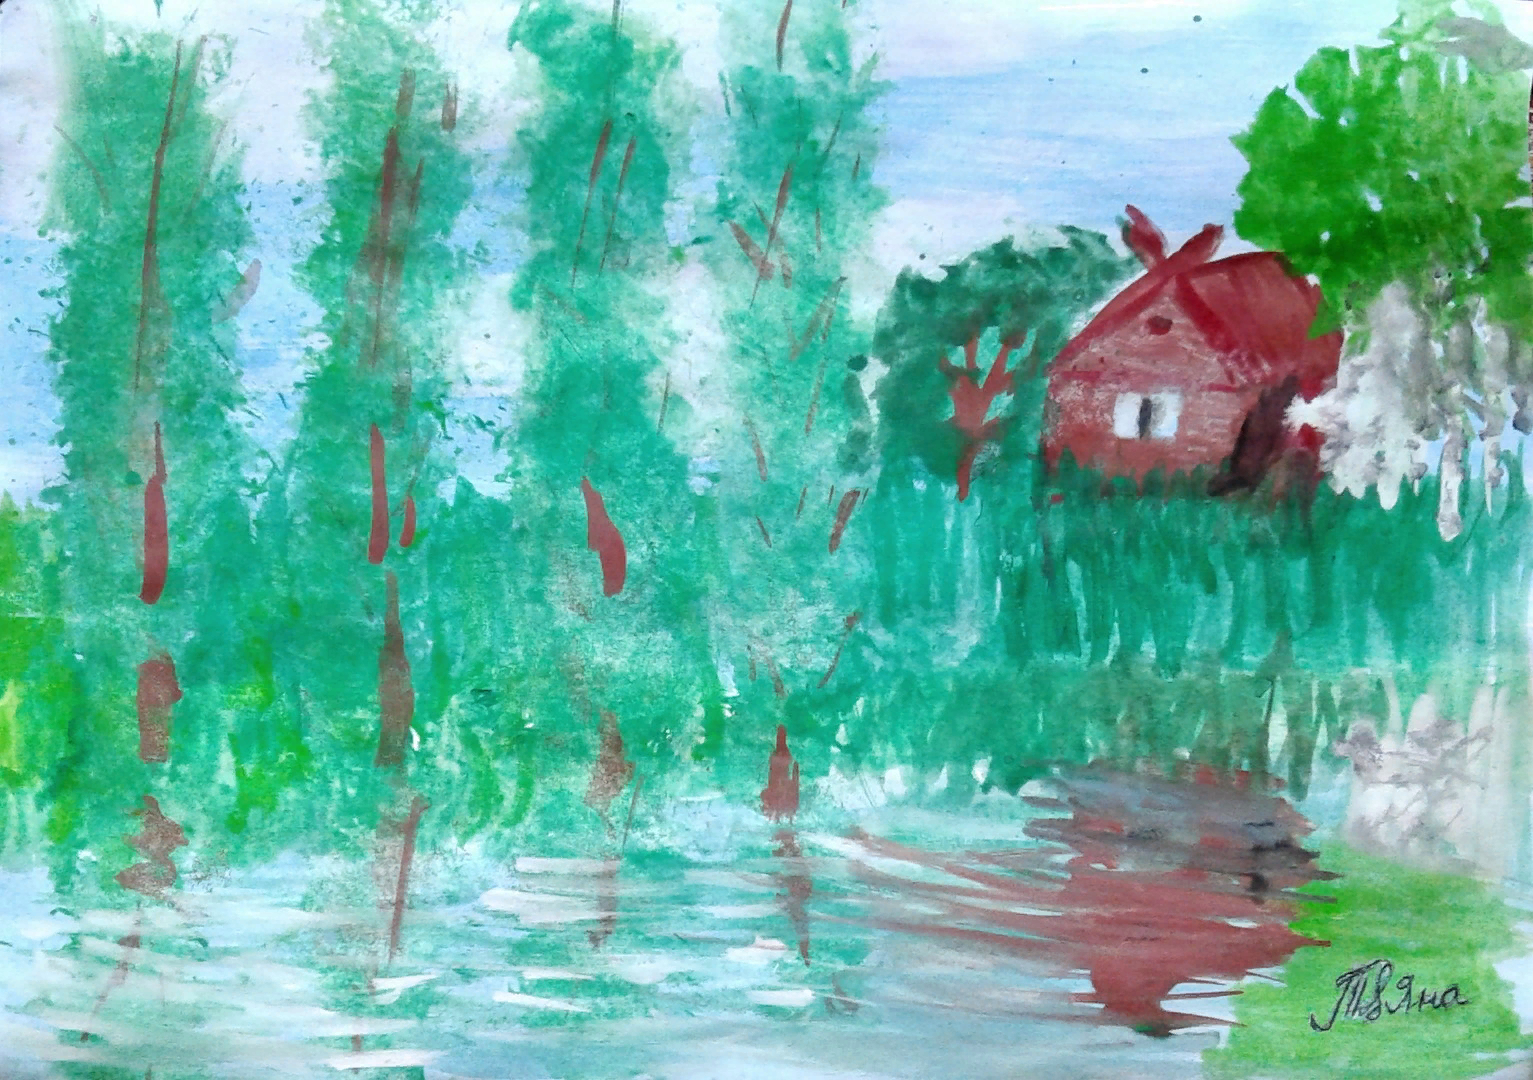 Тест по васюткиному озеру литература 5 класс. Избушка из Васюткино озеро. Иллюстрация к васюткиному озеру. Иллюстрация к произведению Васюткино озеро. Васюткино озеро рисунки детей.